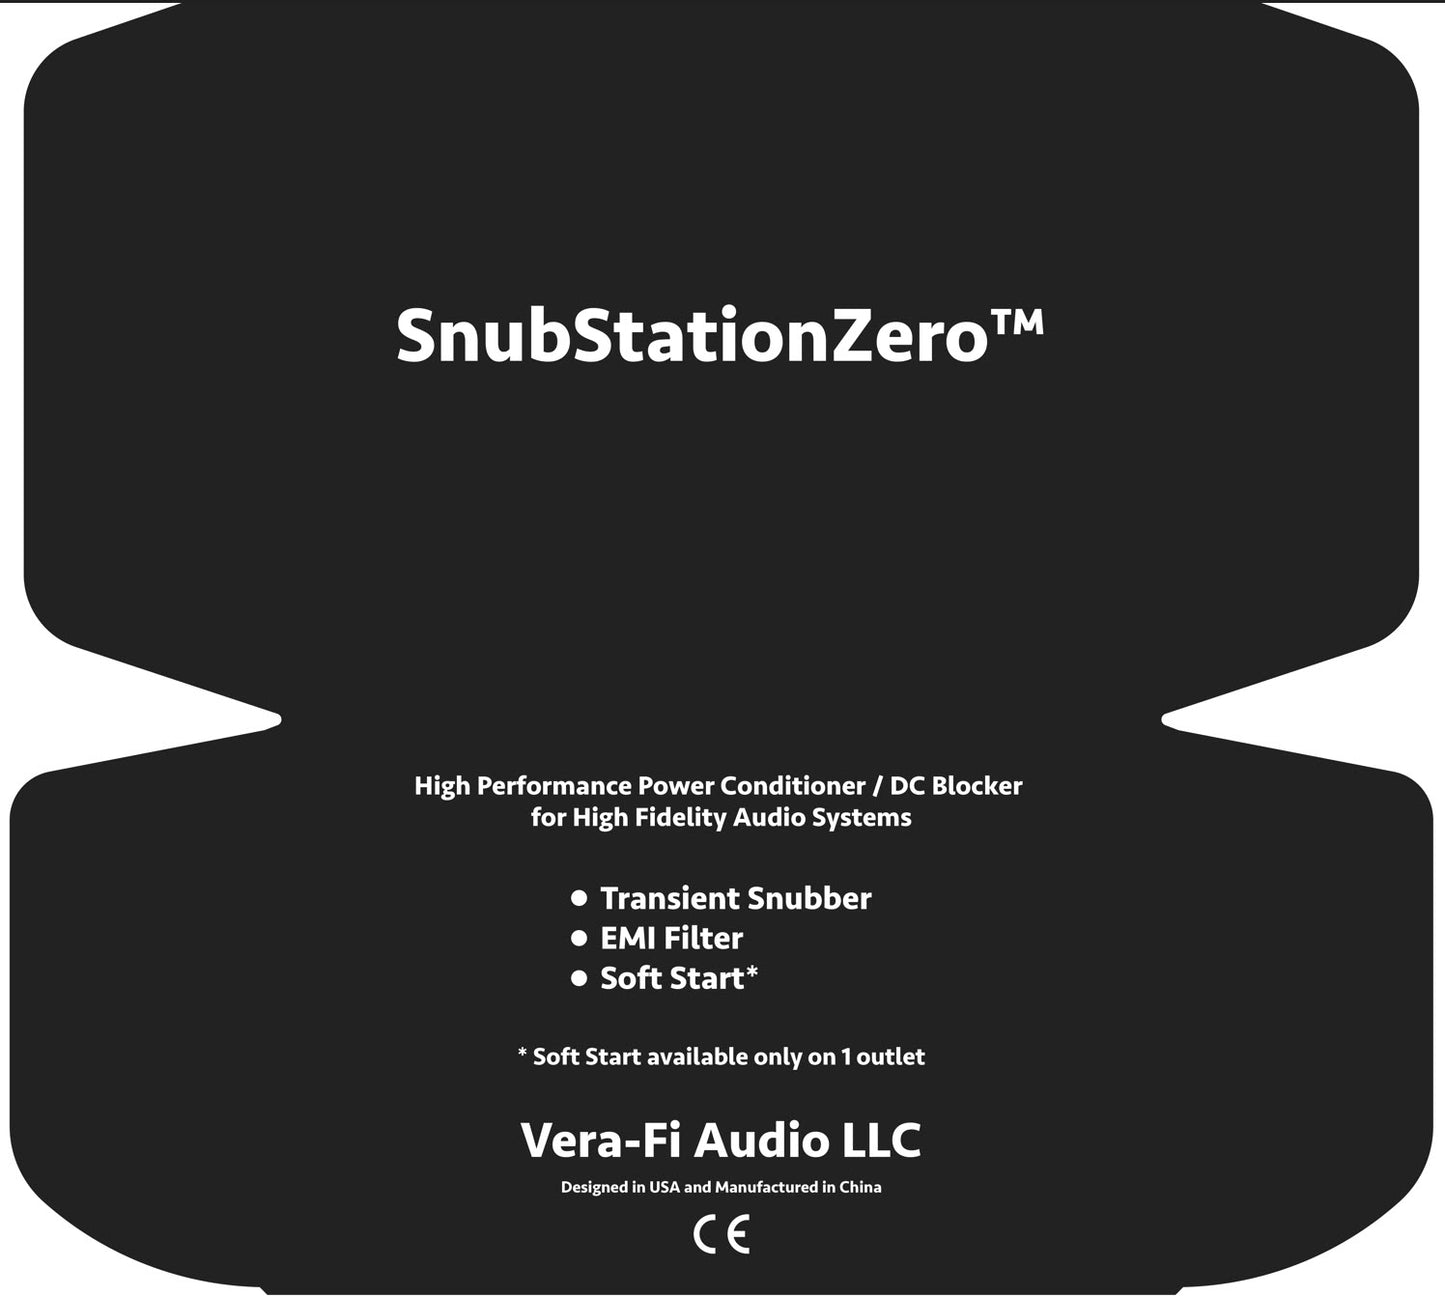 Snub Station Zero